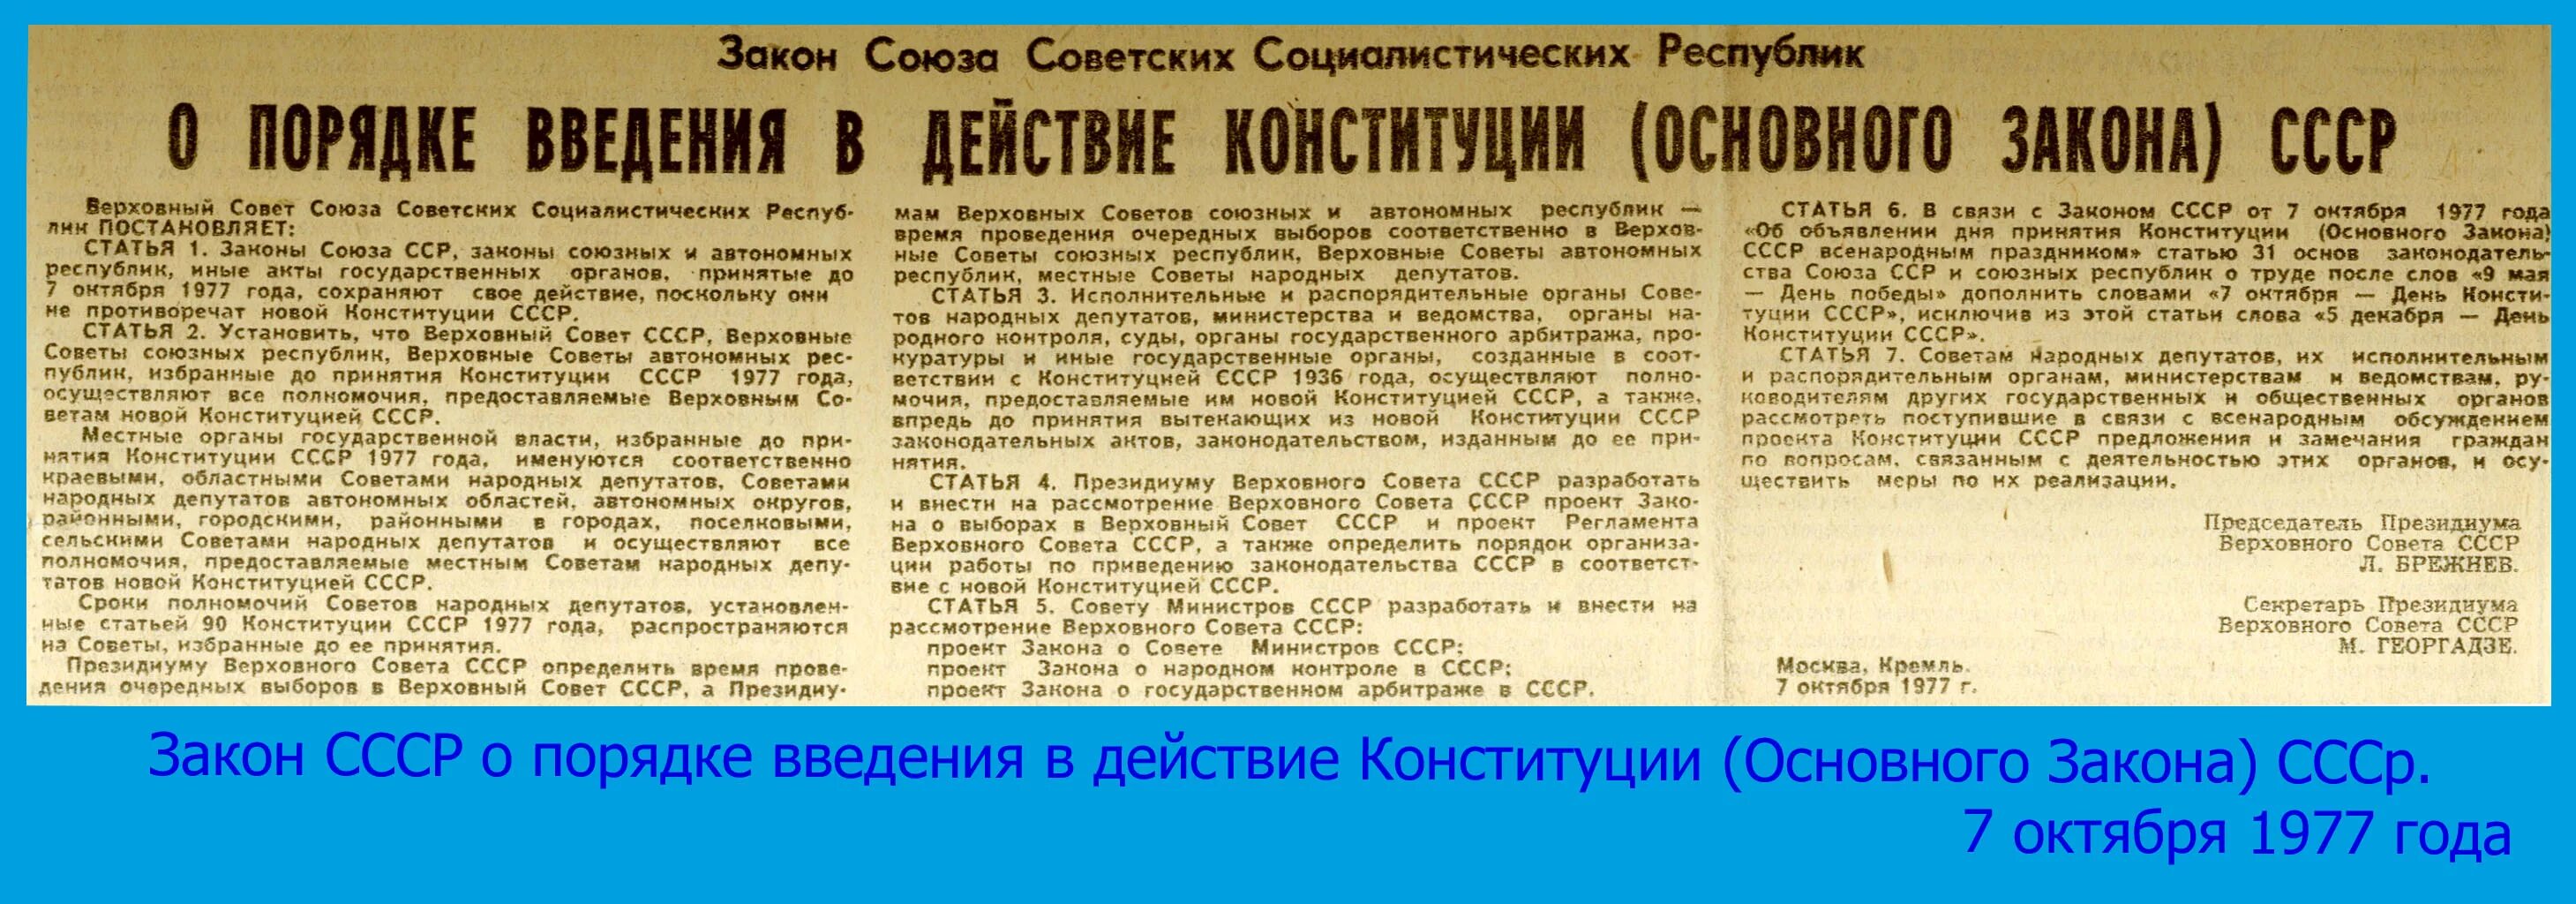 Верховный совет СССР 1977. Конституция 1977 года. Статьи СССР. Конституция СССР 1977 года.